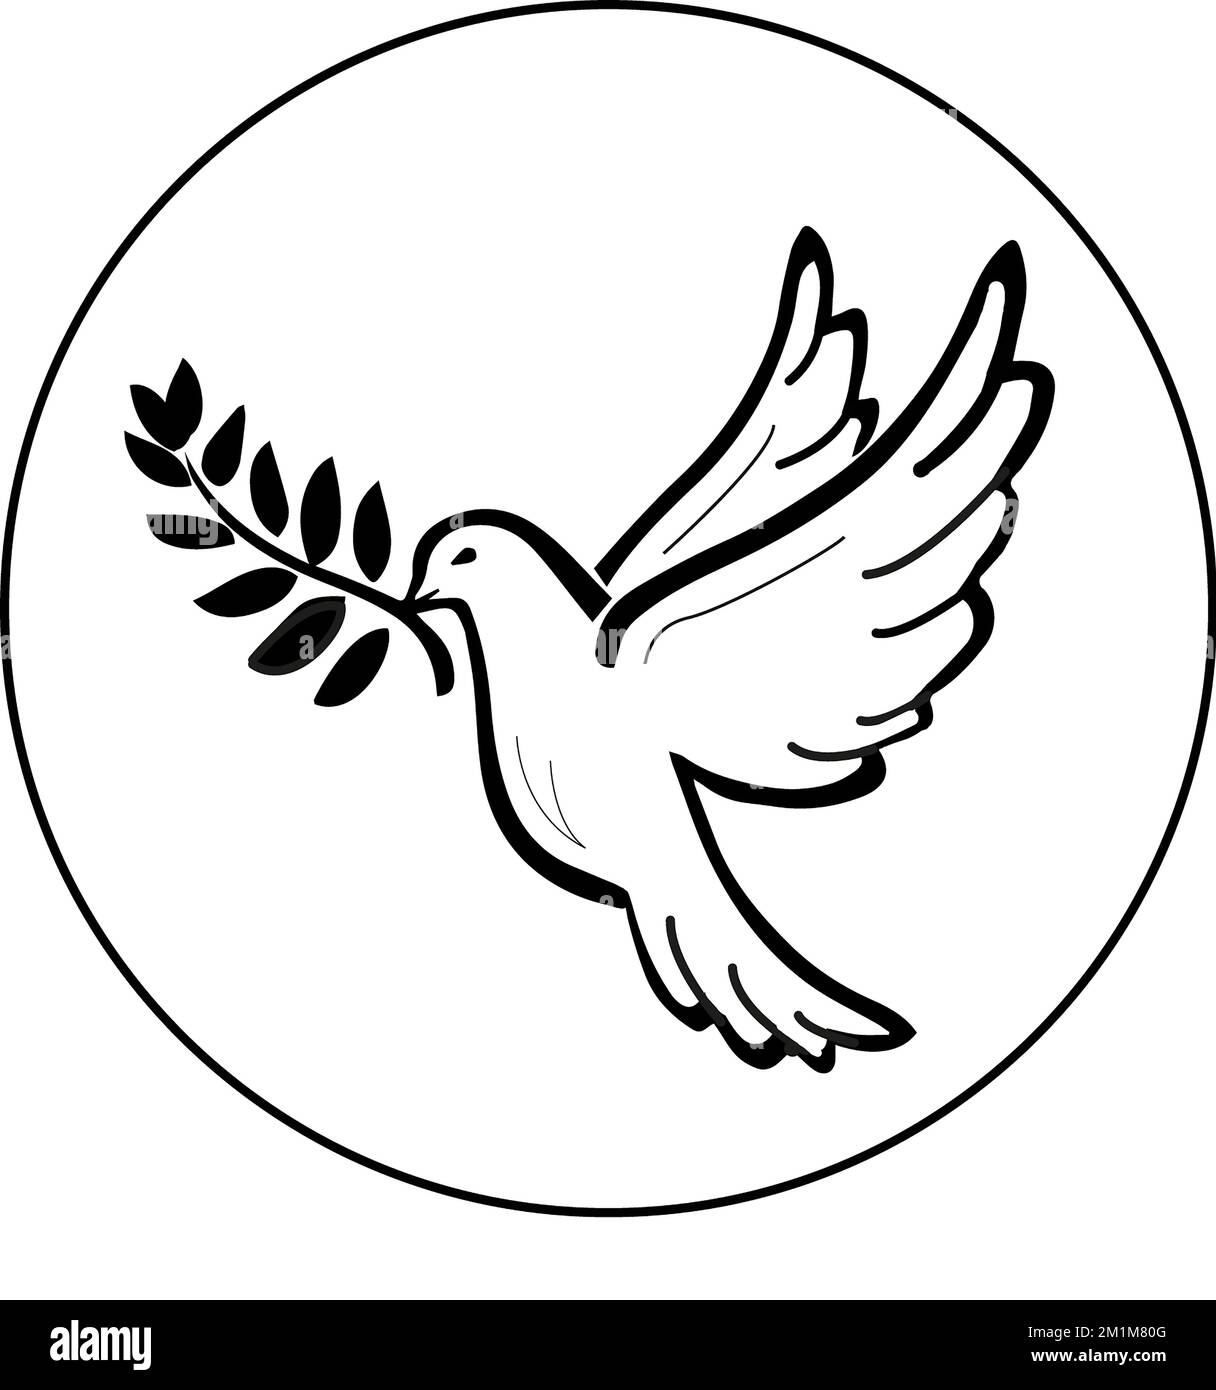 Logo colombe de la paix Stockfoto